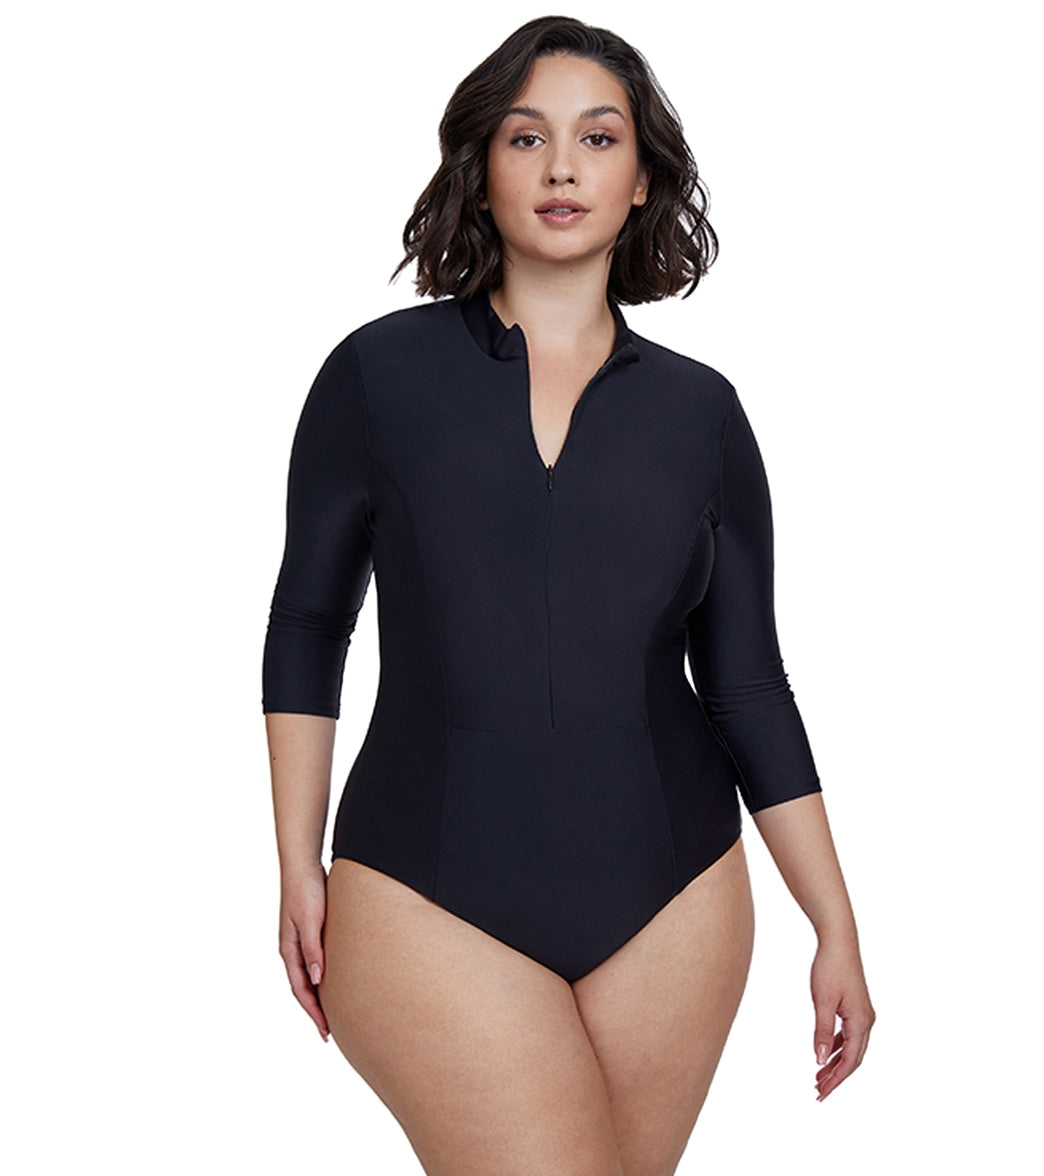 Modest Swimwear Long Sleeve Swimsuit Bathing Suit Beachwear